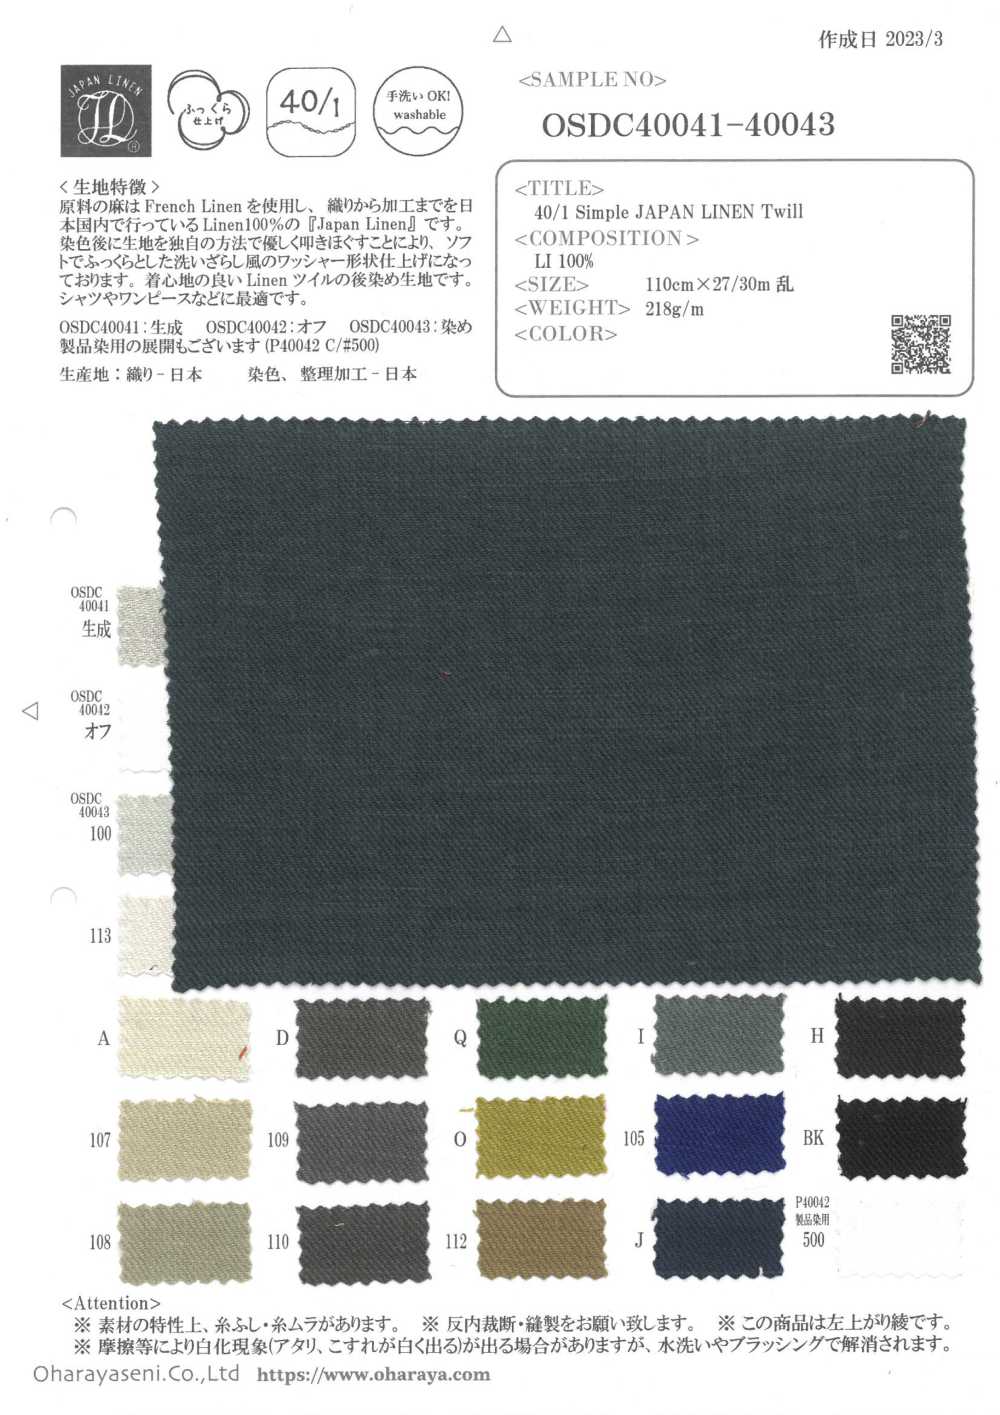 P40042 40/1 Vải Chéo Nhật Bản đơn Giản (PFD) Oharayaseni